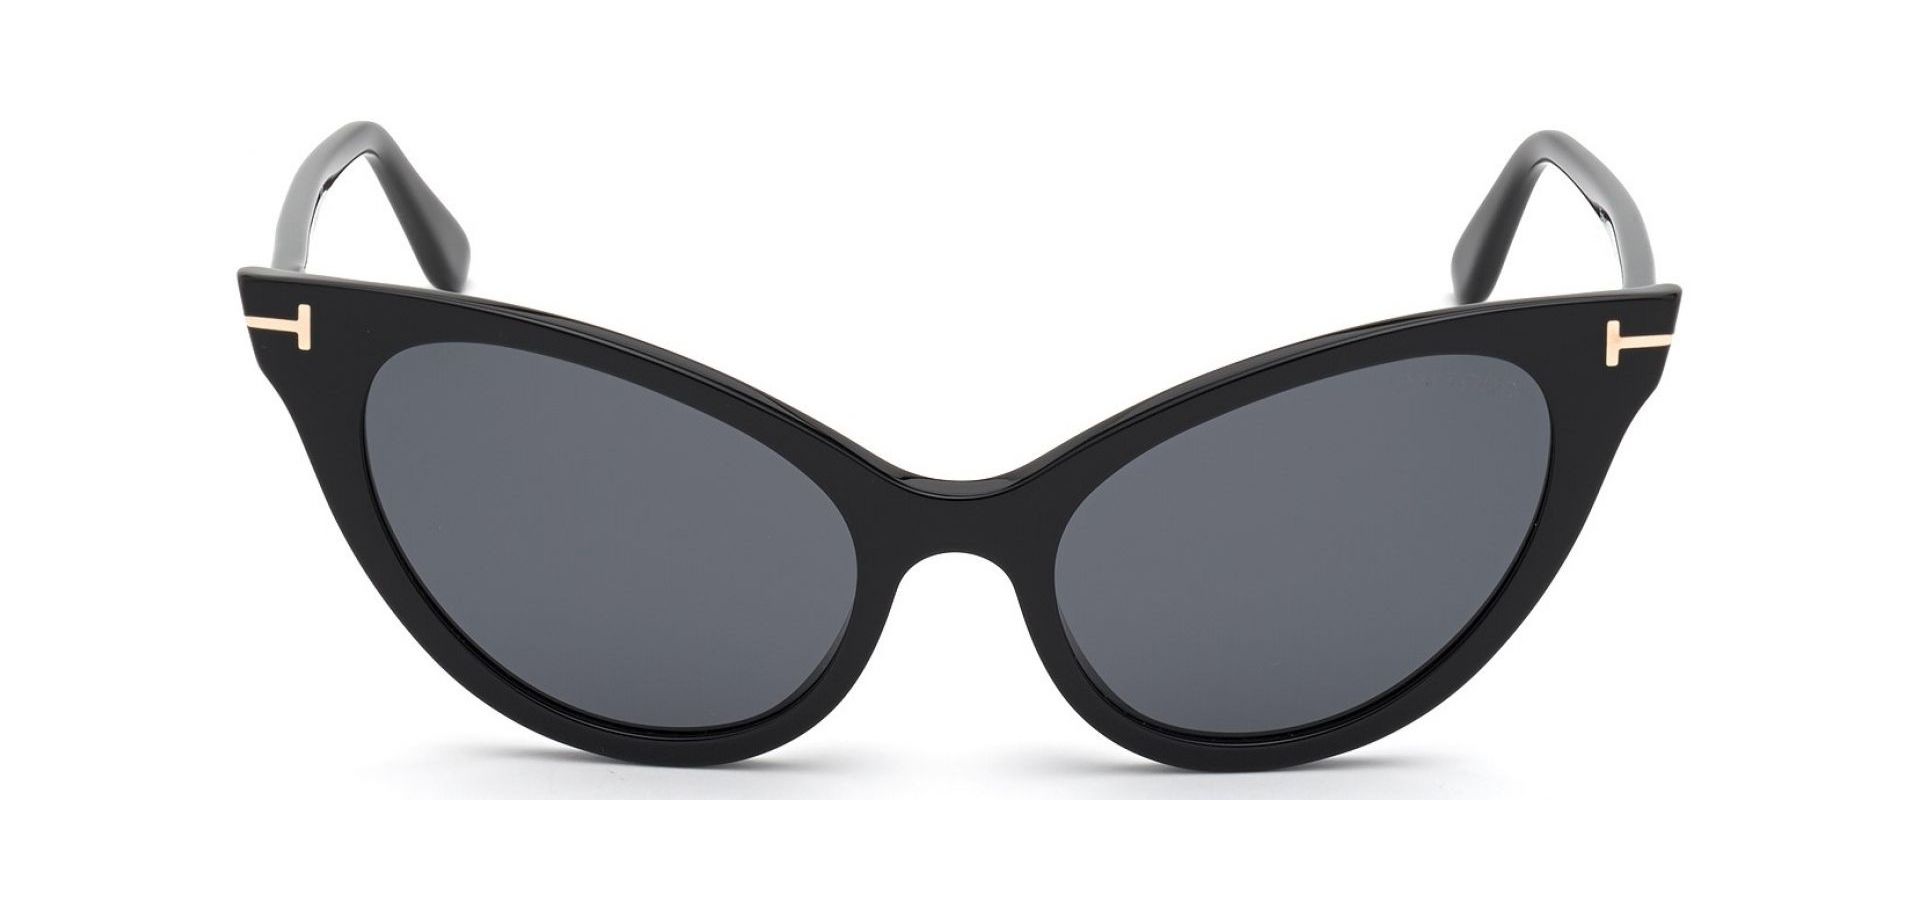 Sunčane naočale Tom Ford FT 0820: Boja: Black, Veličina: 53-2-19-140, Spol: ženske, Materijal: acetat